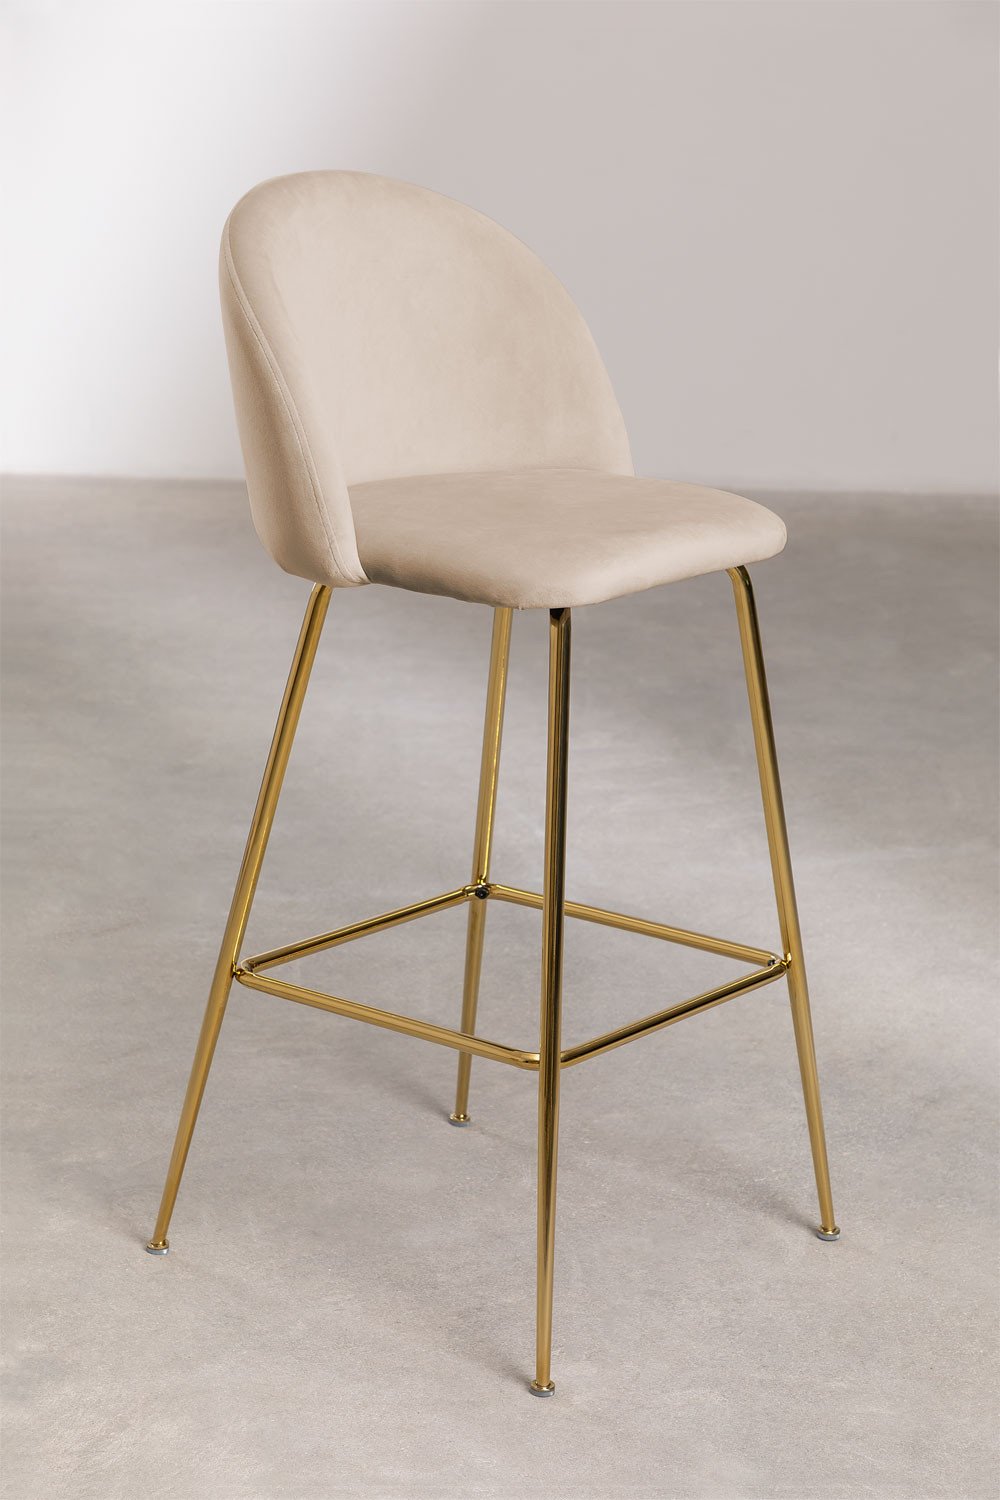 Aksamitny wysoki stolek Kana Design, obrazek w galerii 1